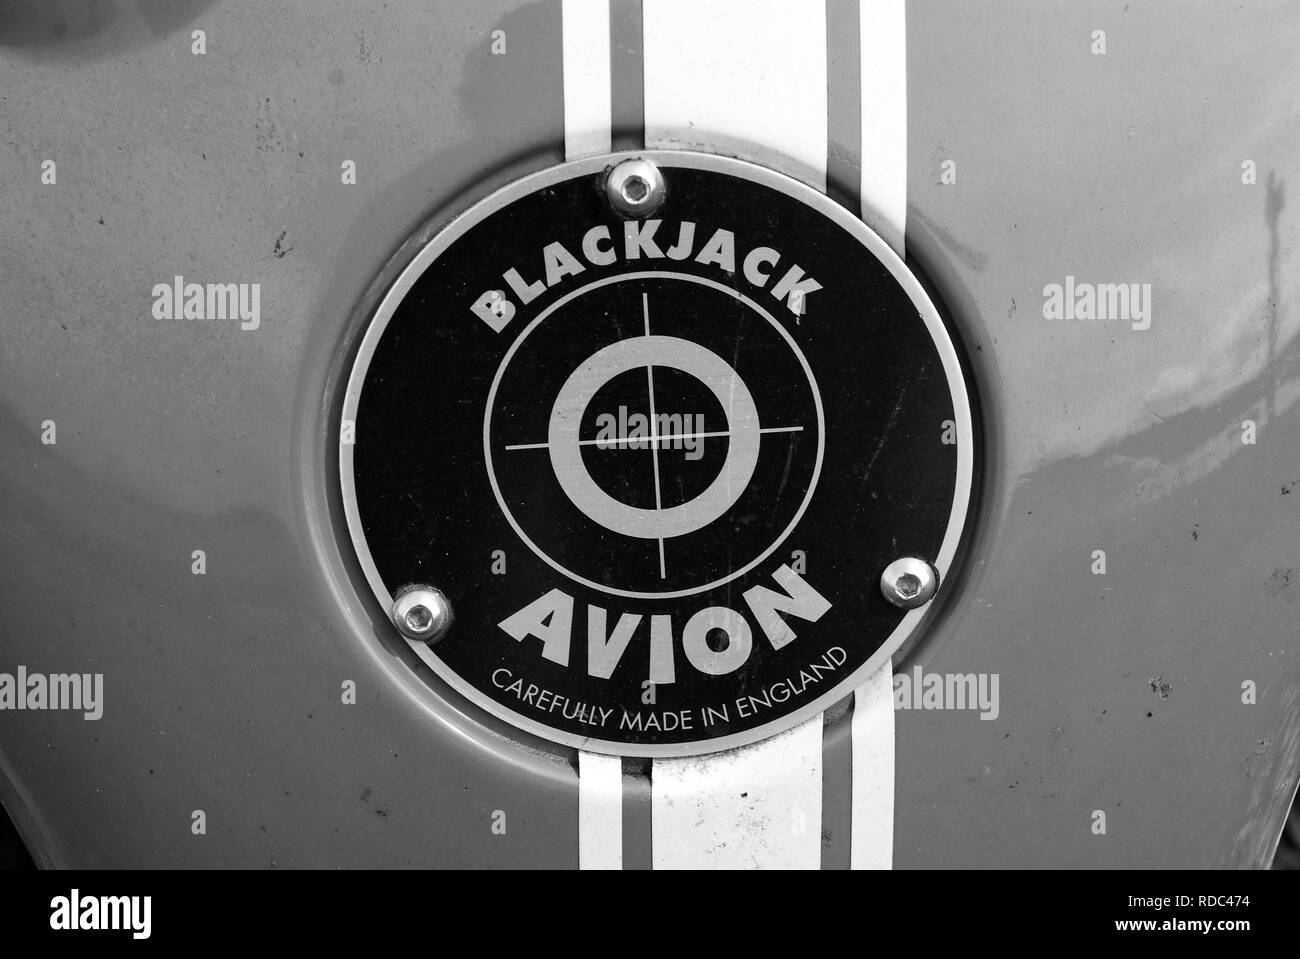 Oban, United Kingdom - February 20, 2010: blackjack avion car badge. Red badge on blue metal background. Car name and emblem. Automotive logo. Transport and transportation. Stock Photo